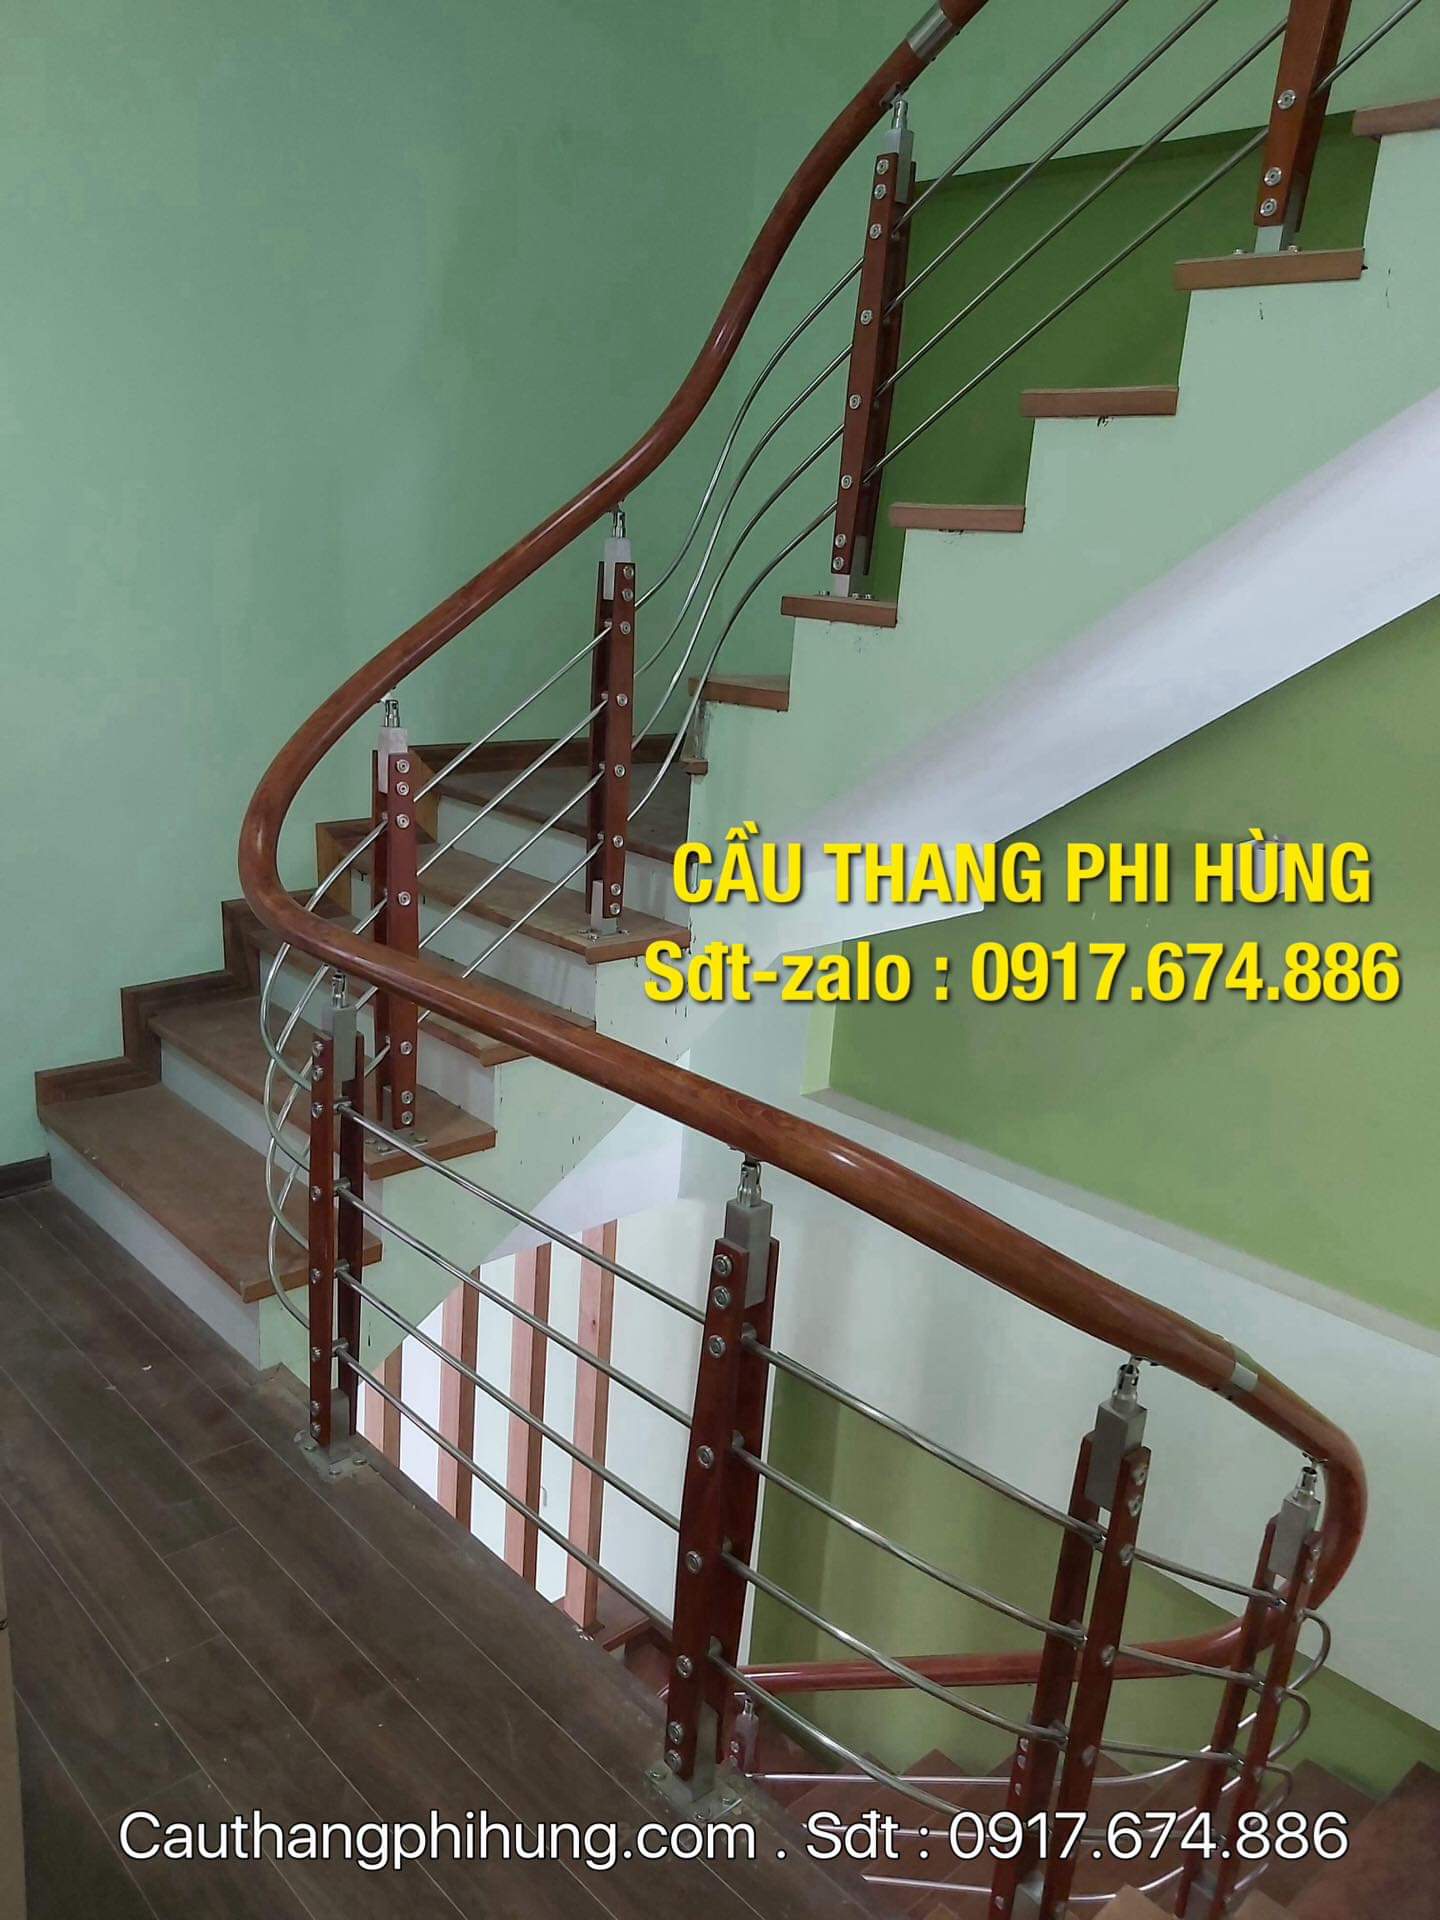 Cầu thang inox là sản phẩm tiện ích và sang trọng cho ngôi nhà của bạn. Sản phẩm được thiết kế tinh tế, chắc chắn và đáng tin cậy, giúp cho không gian sống của bạn trở nên đẹp hơn và thuận tiện hơn.